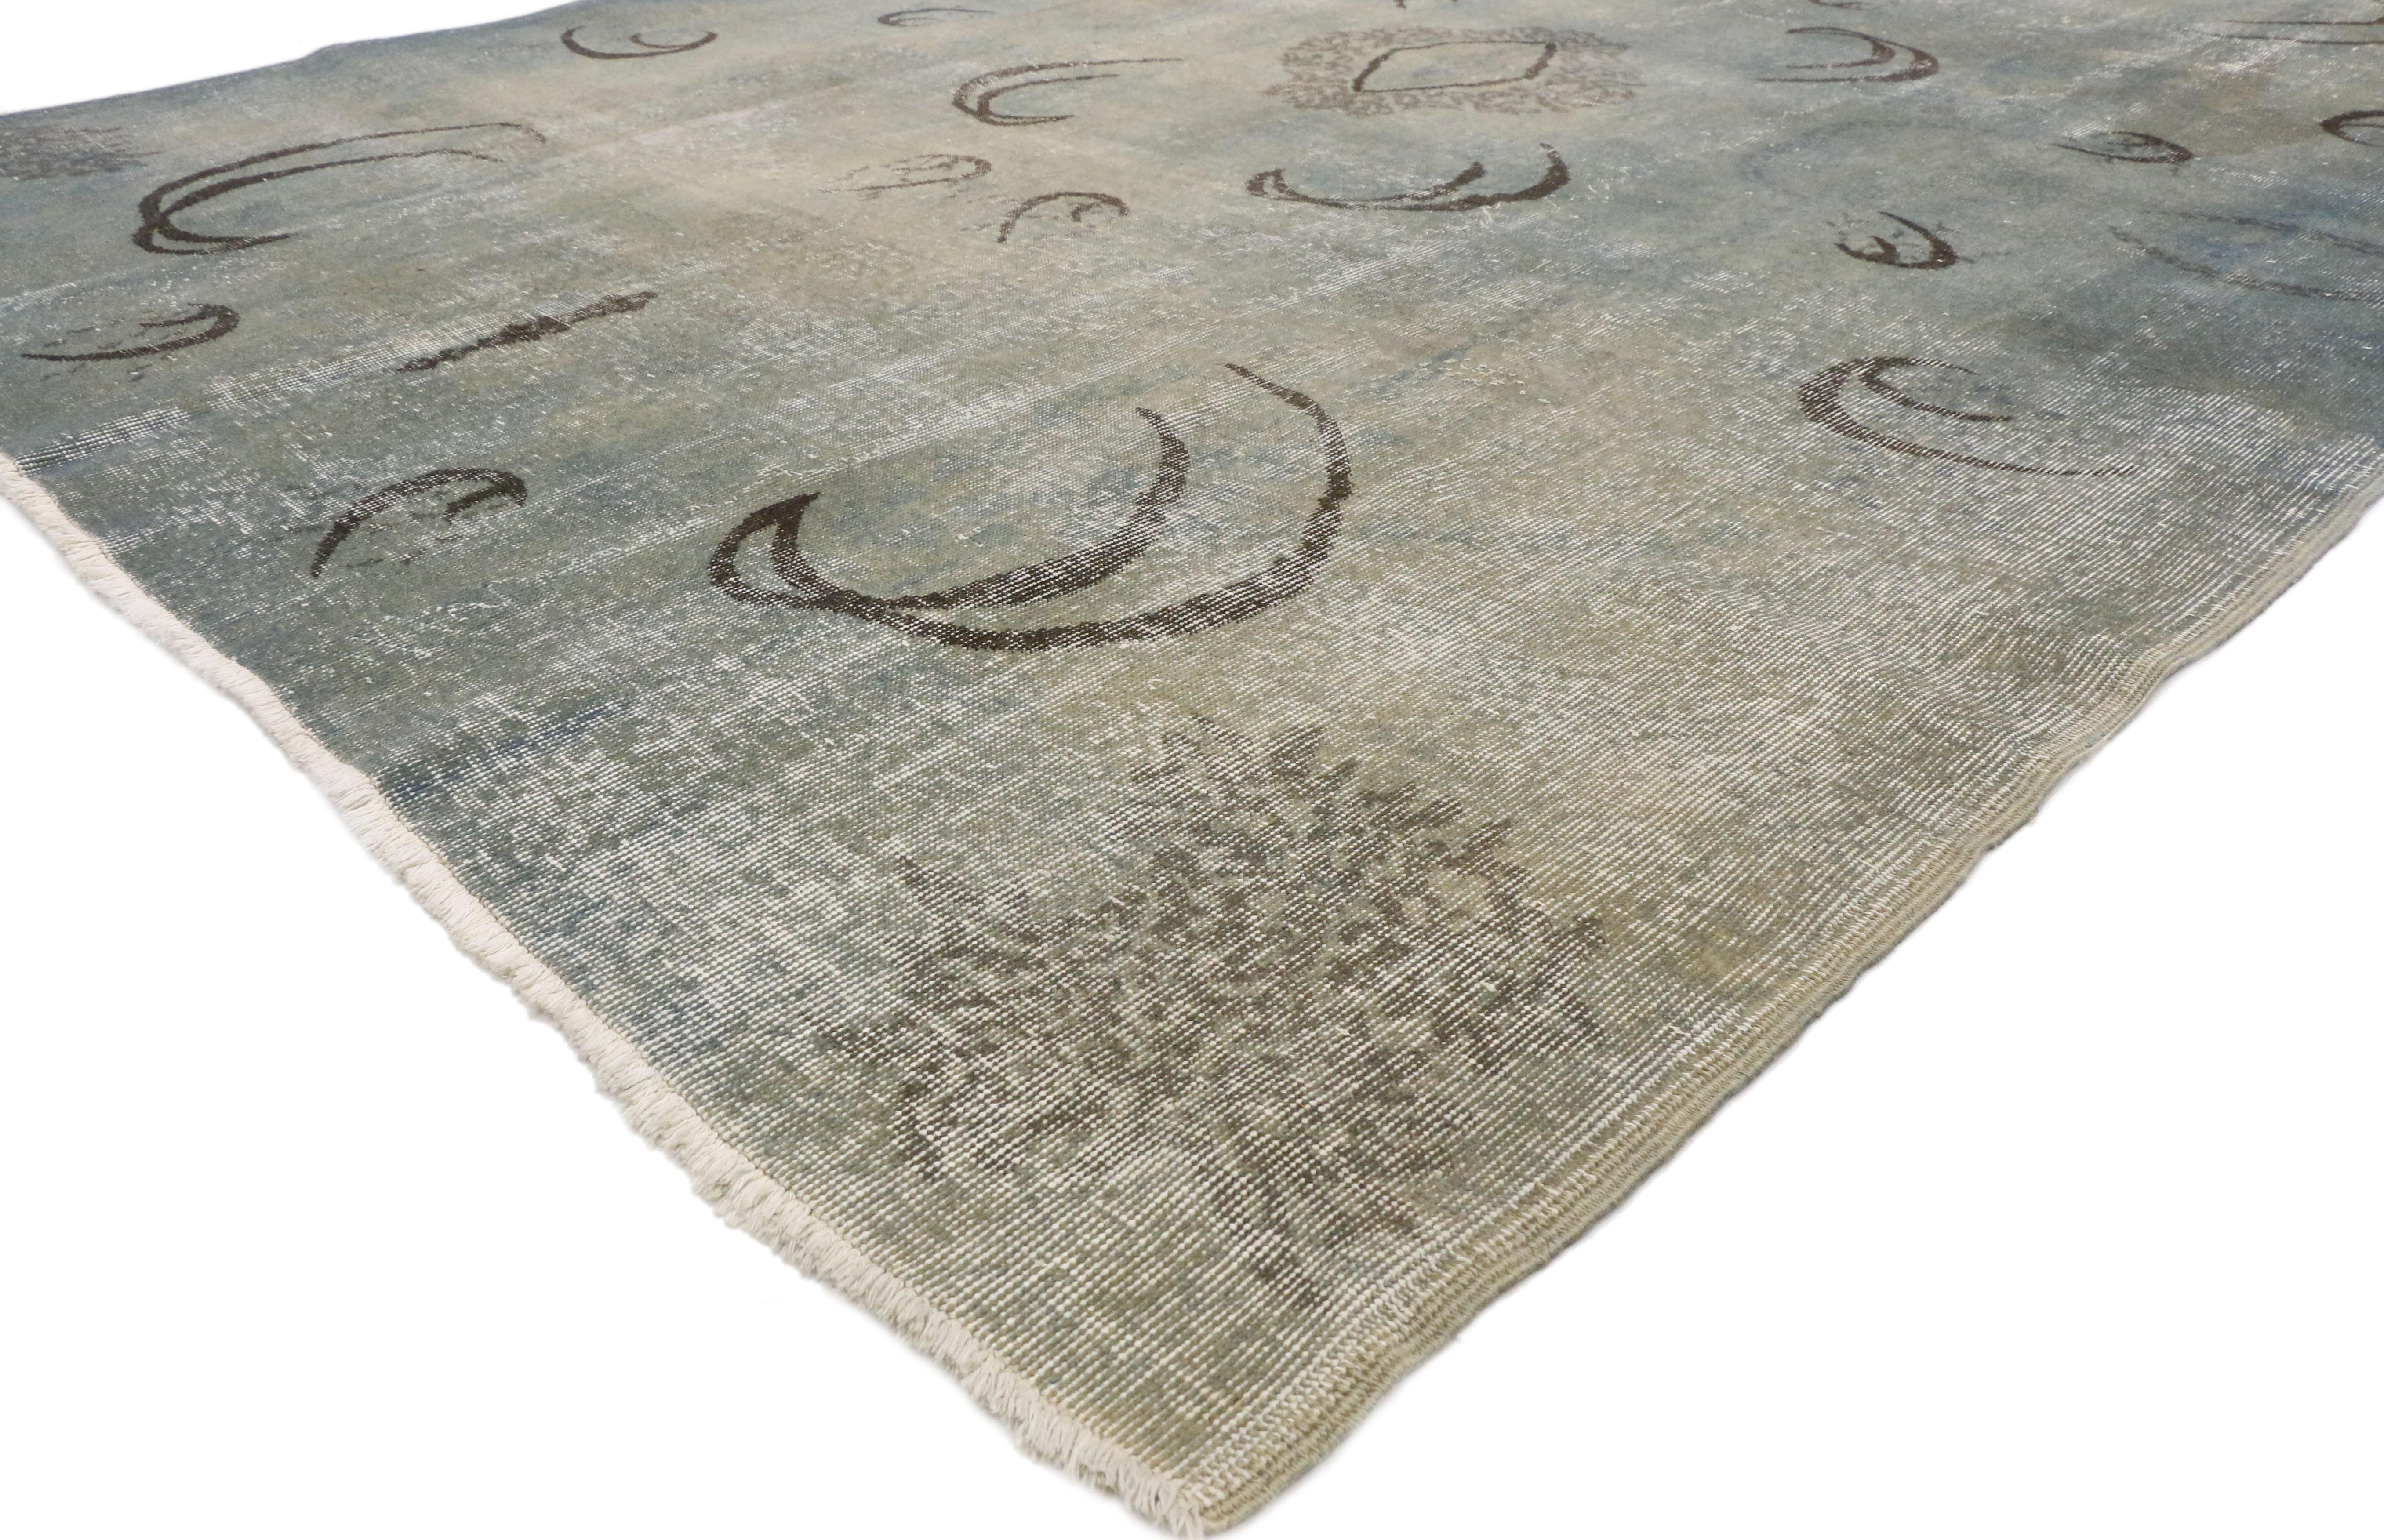 50856 Distressed Vintage Türkisch Sivas Teppich 07'05 X 10'02.
Mit seiner Schlichtheit und dem Stil von Zeki Muren vermittelt dieser handgeknüpfte Teppich aus Wolle im türkischen Sivas-Stil ein Gefühl von gemütlicher Zufriedenheit, ohne dabei